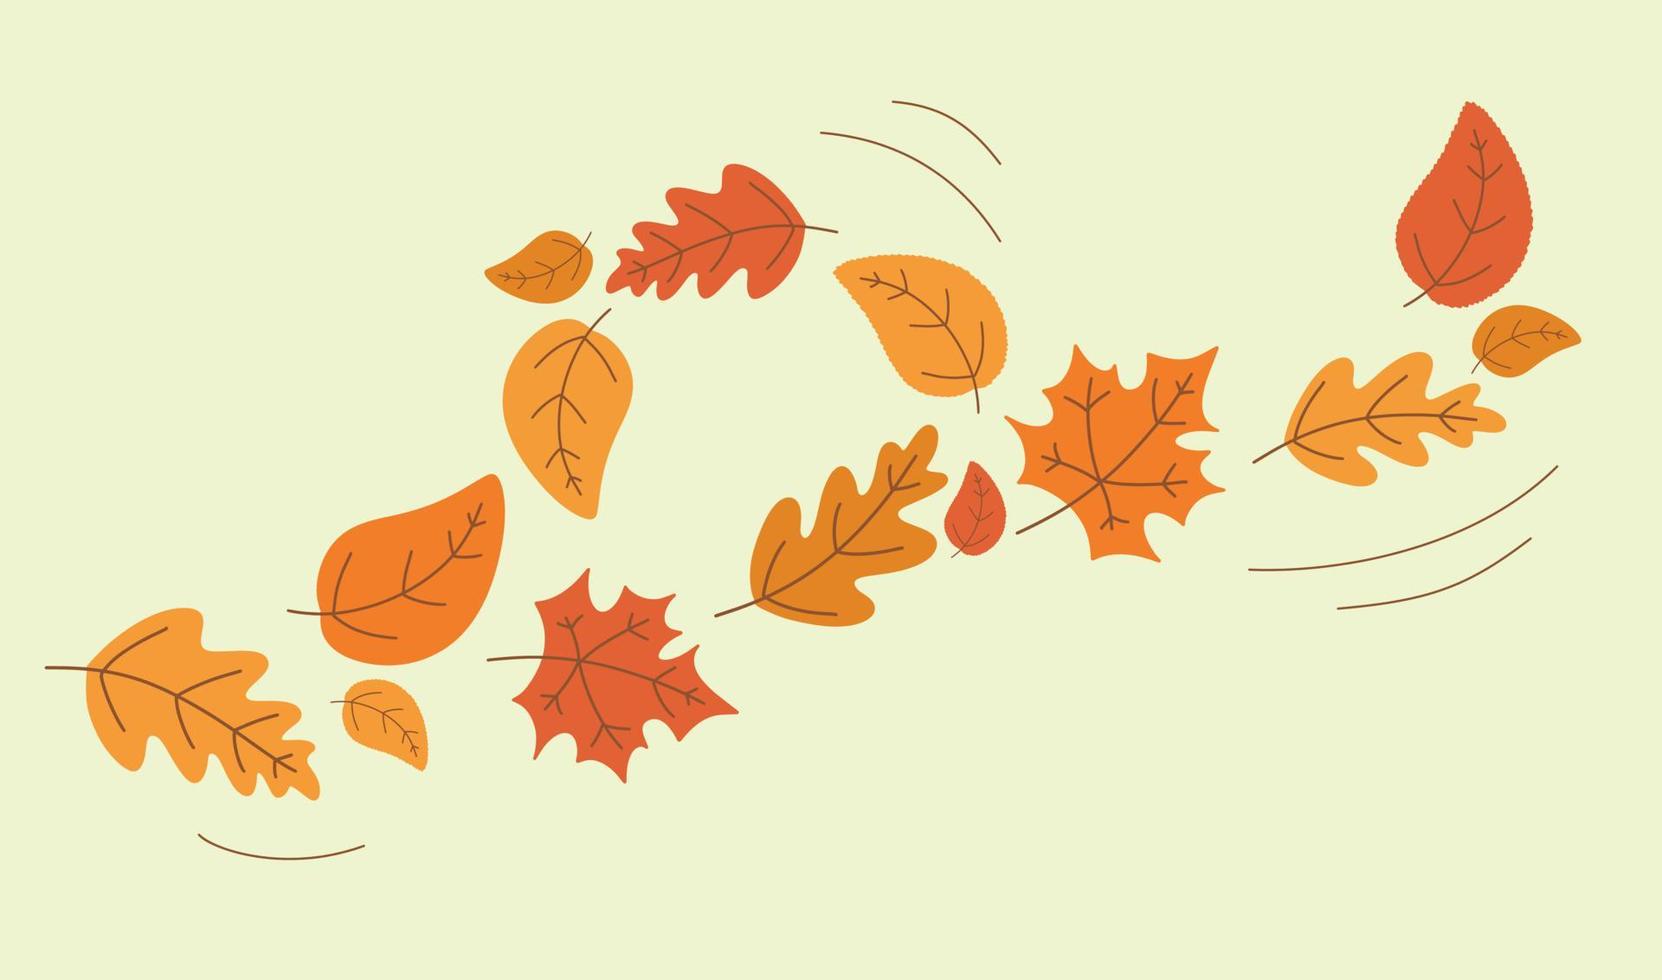 chute de feuilles d'automne colorées. les feuilles de chêne et d'érable jaunies tourbillonnent dans le vent. illustration vectorielle saisonnière. modèle pour la conception décorative. vecteur